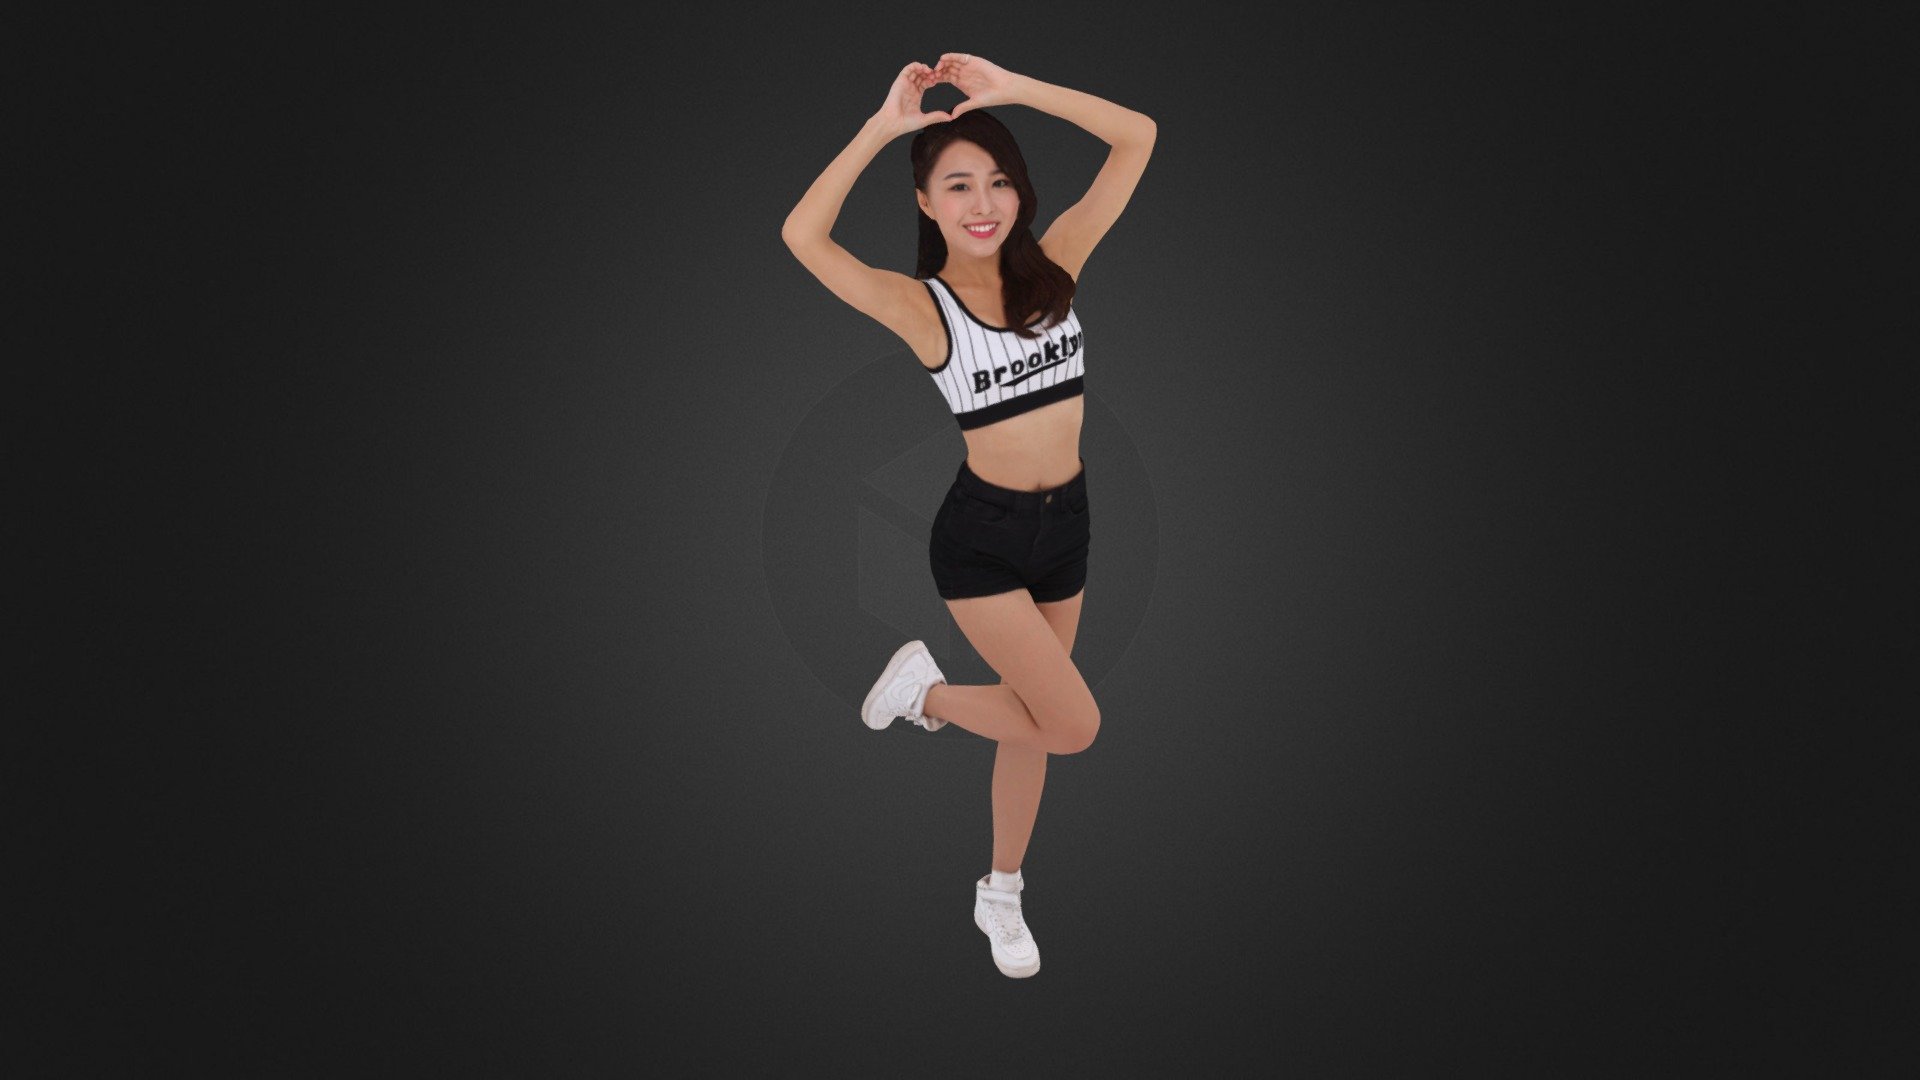 Cheerleader 879 - 3D model by Evan 3D Scanning studio (@Evan-3DScanningStudio) 3d model